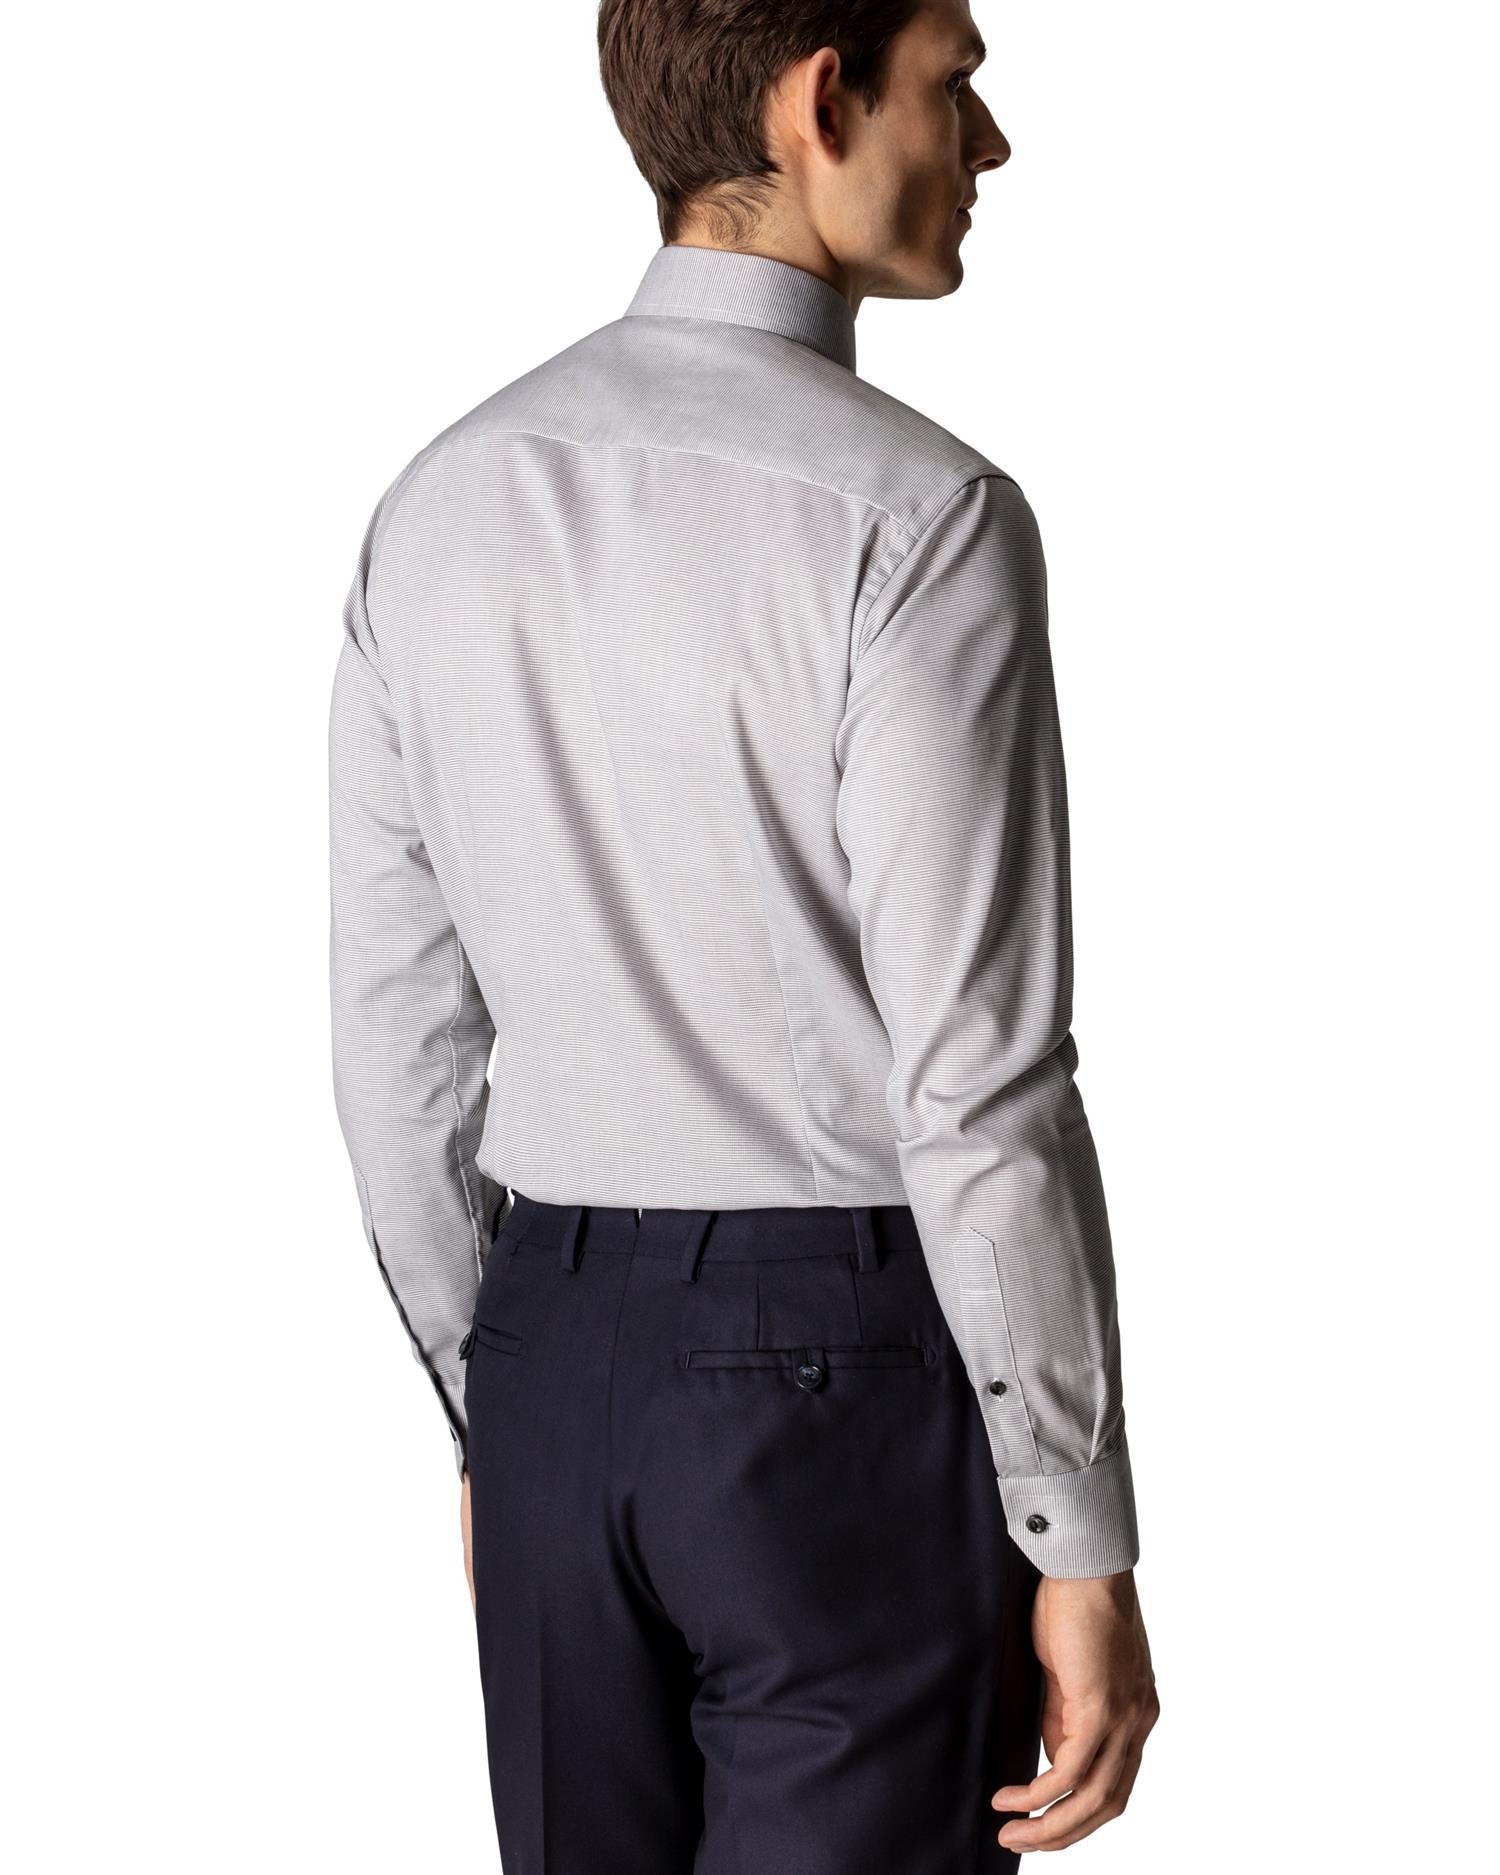 Eton Slim Grey Twill Shirt Skjorte Grå - chrismoa.no